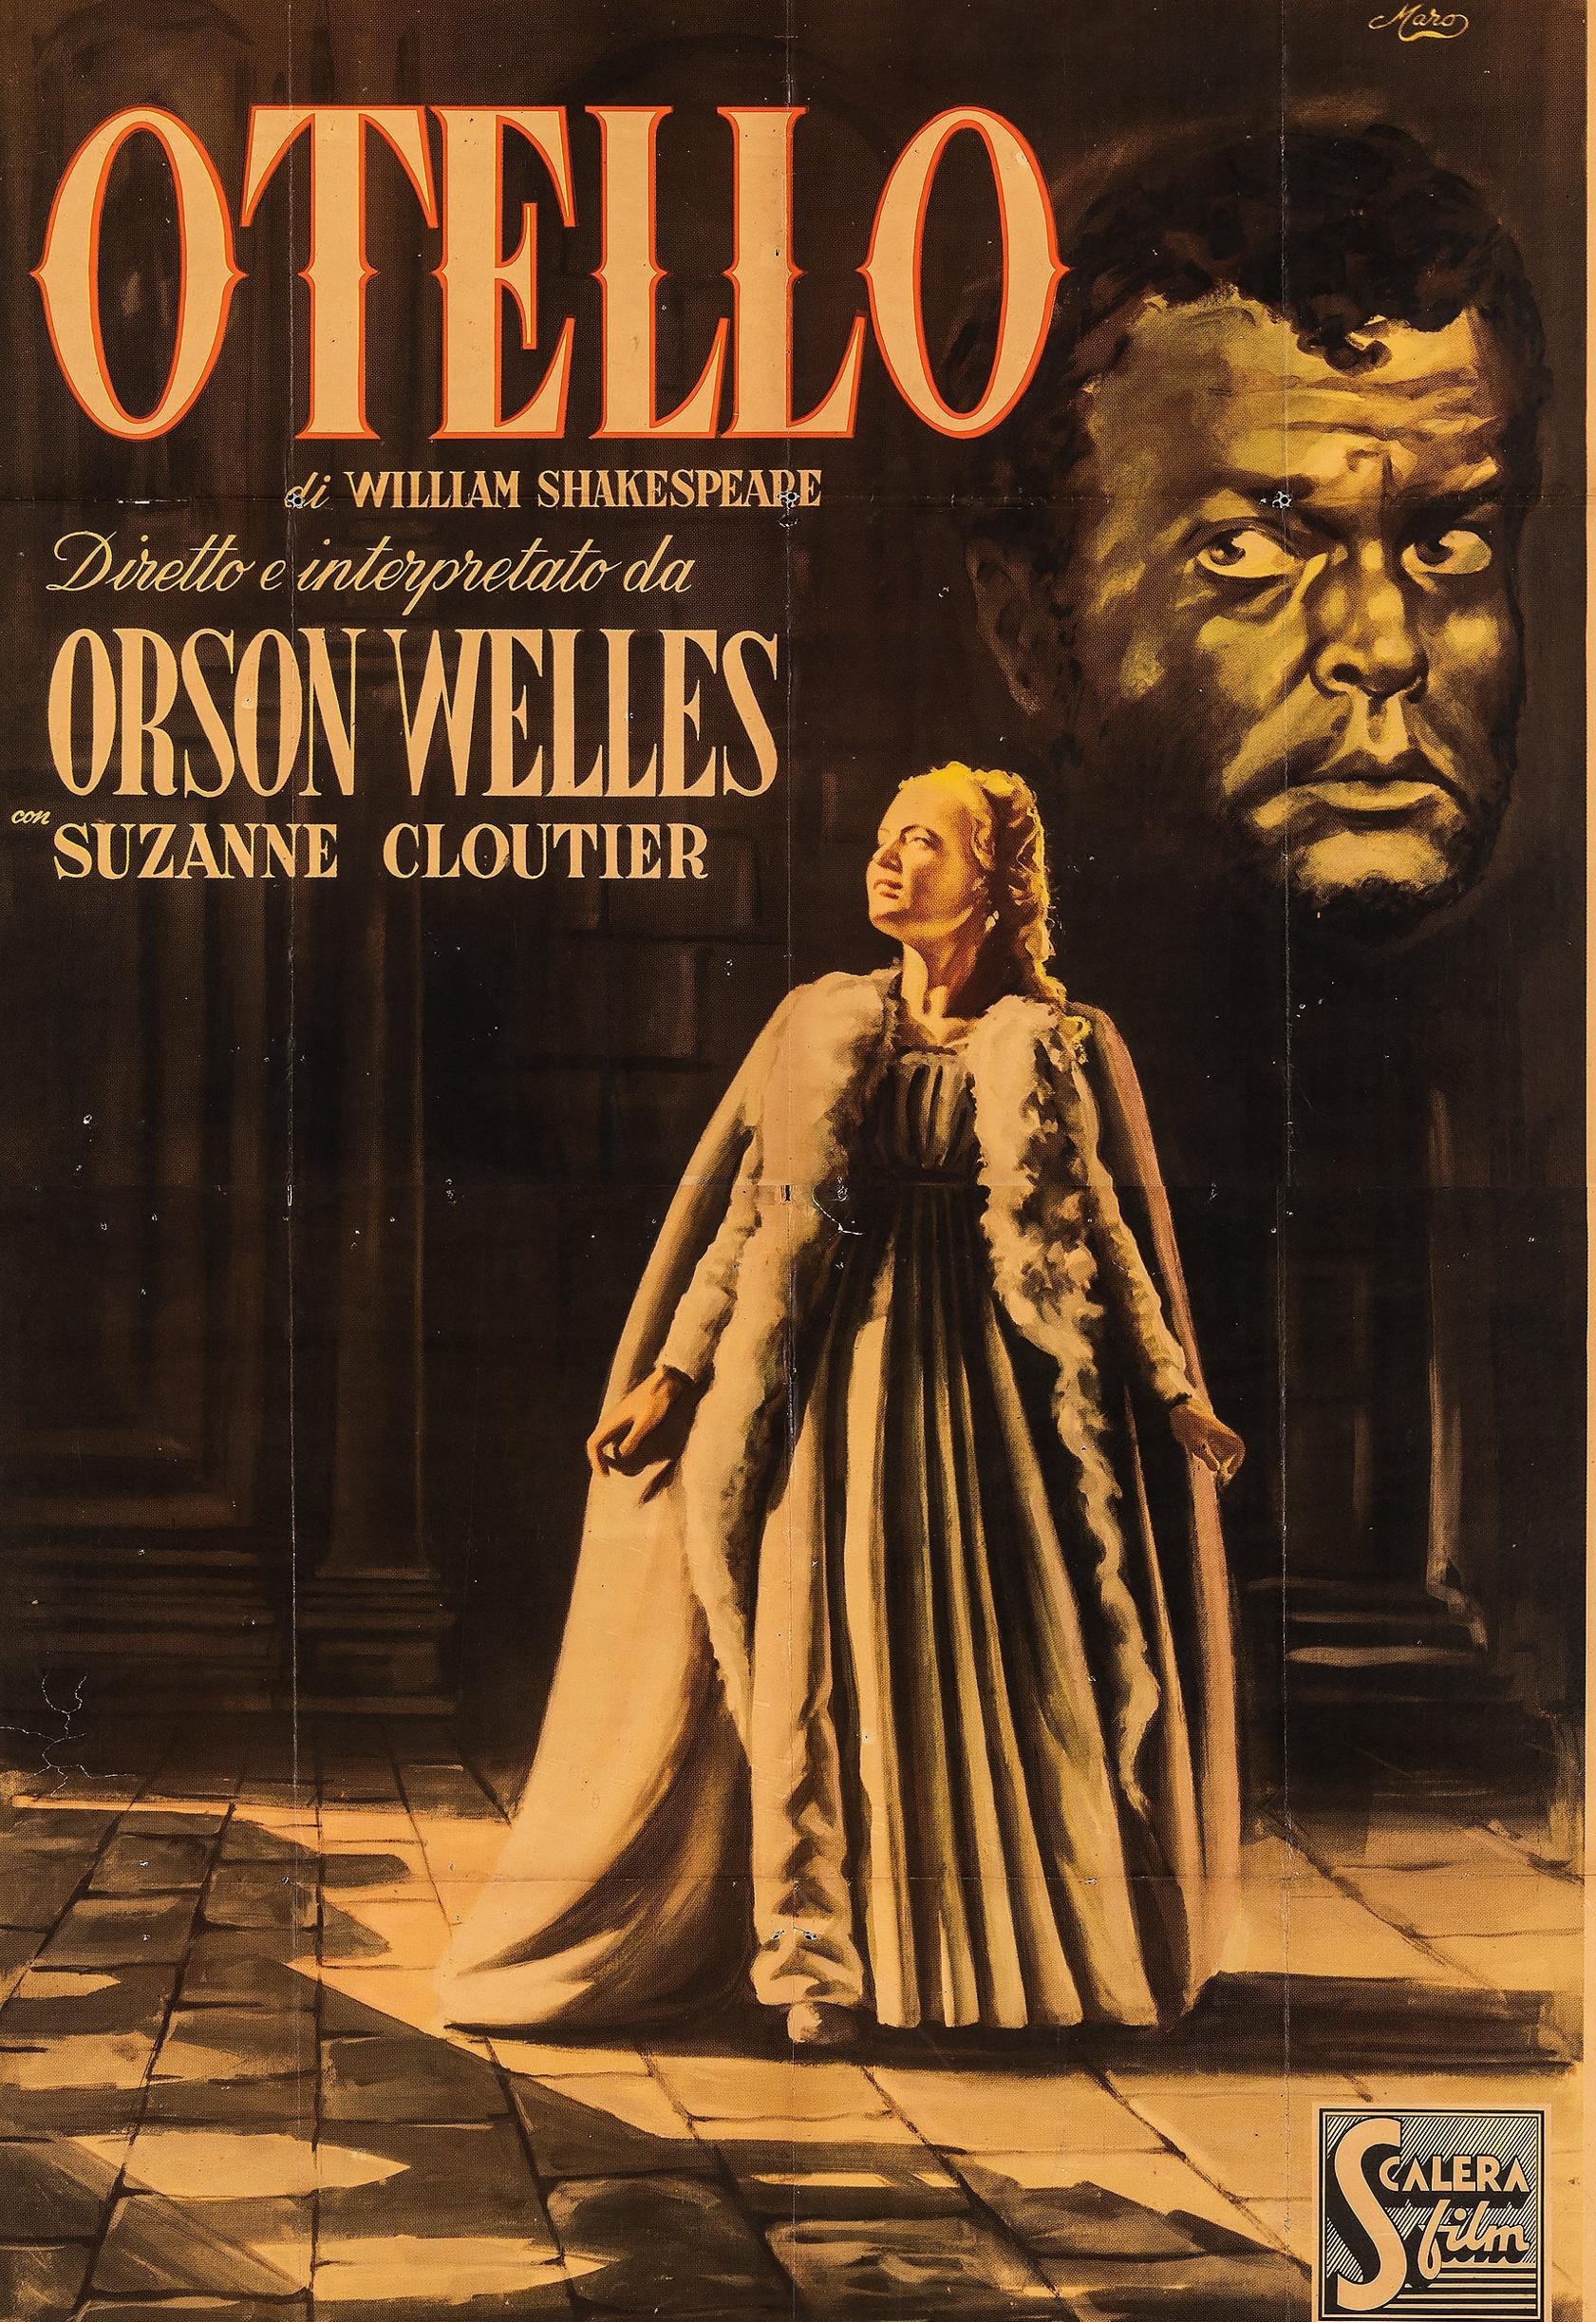 فيلم Othello اسمه بالترجمة الحرفية والتجارية متطابق.